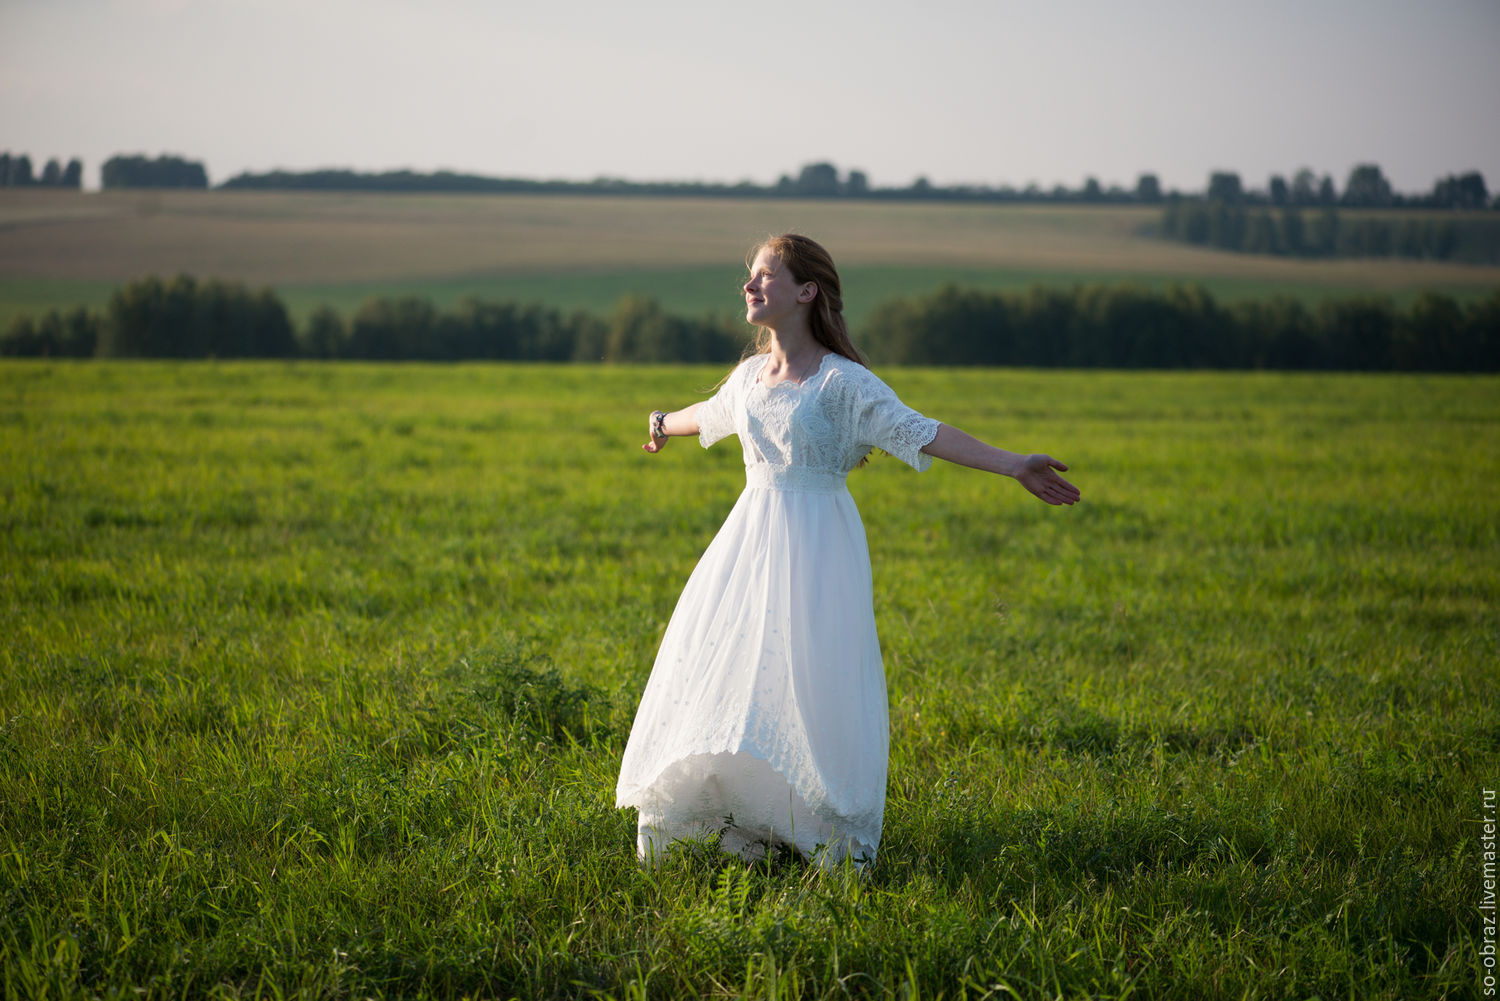 Анюта в белом платье